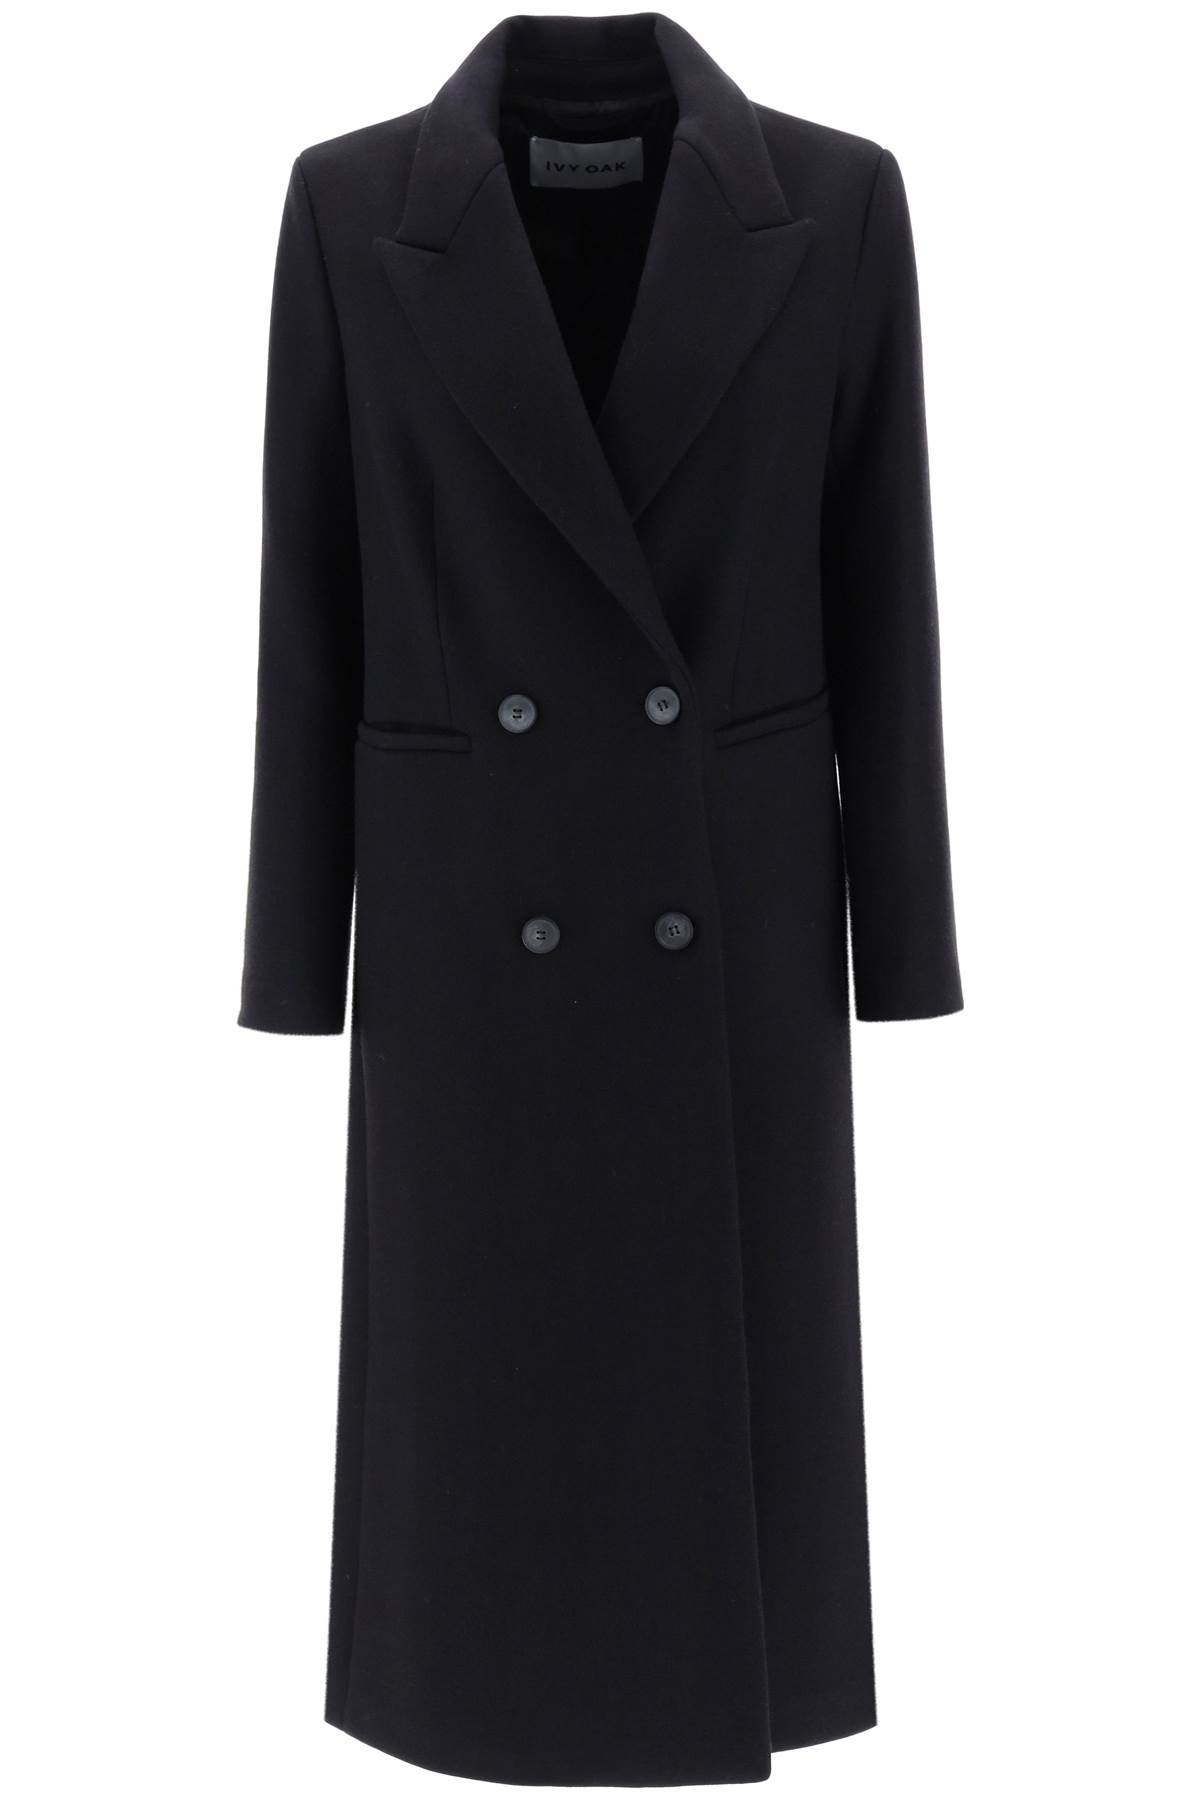 Shop Ivy & Oak Cayenne Double-breasted Wool Coat In Black